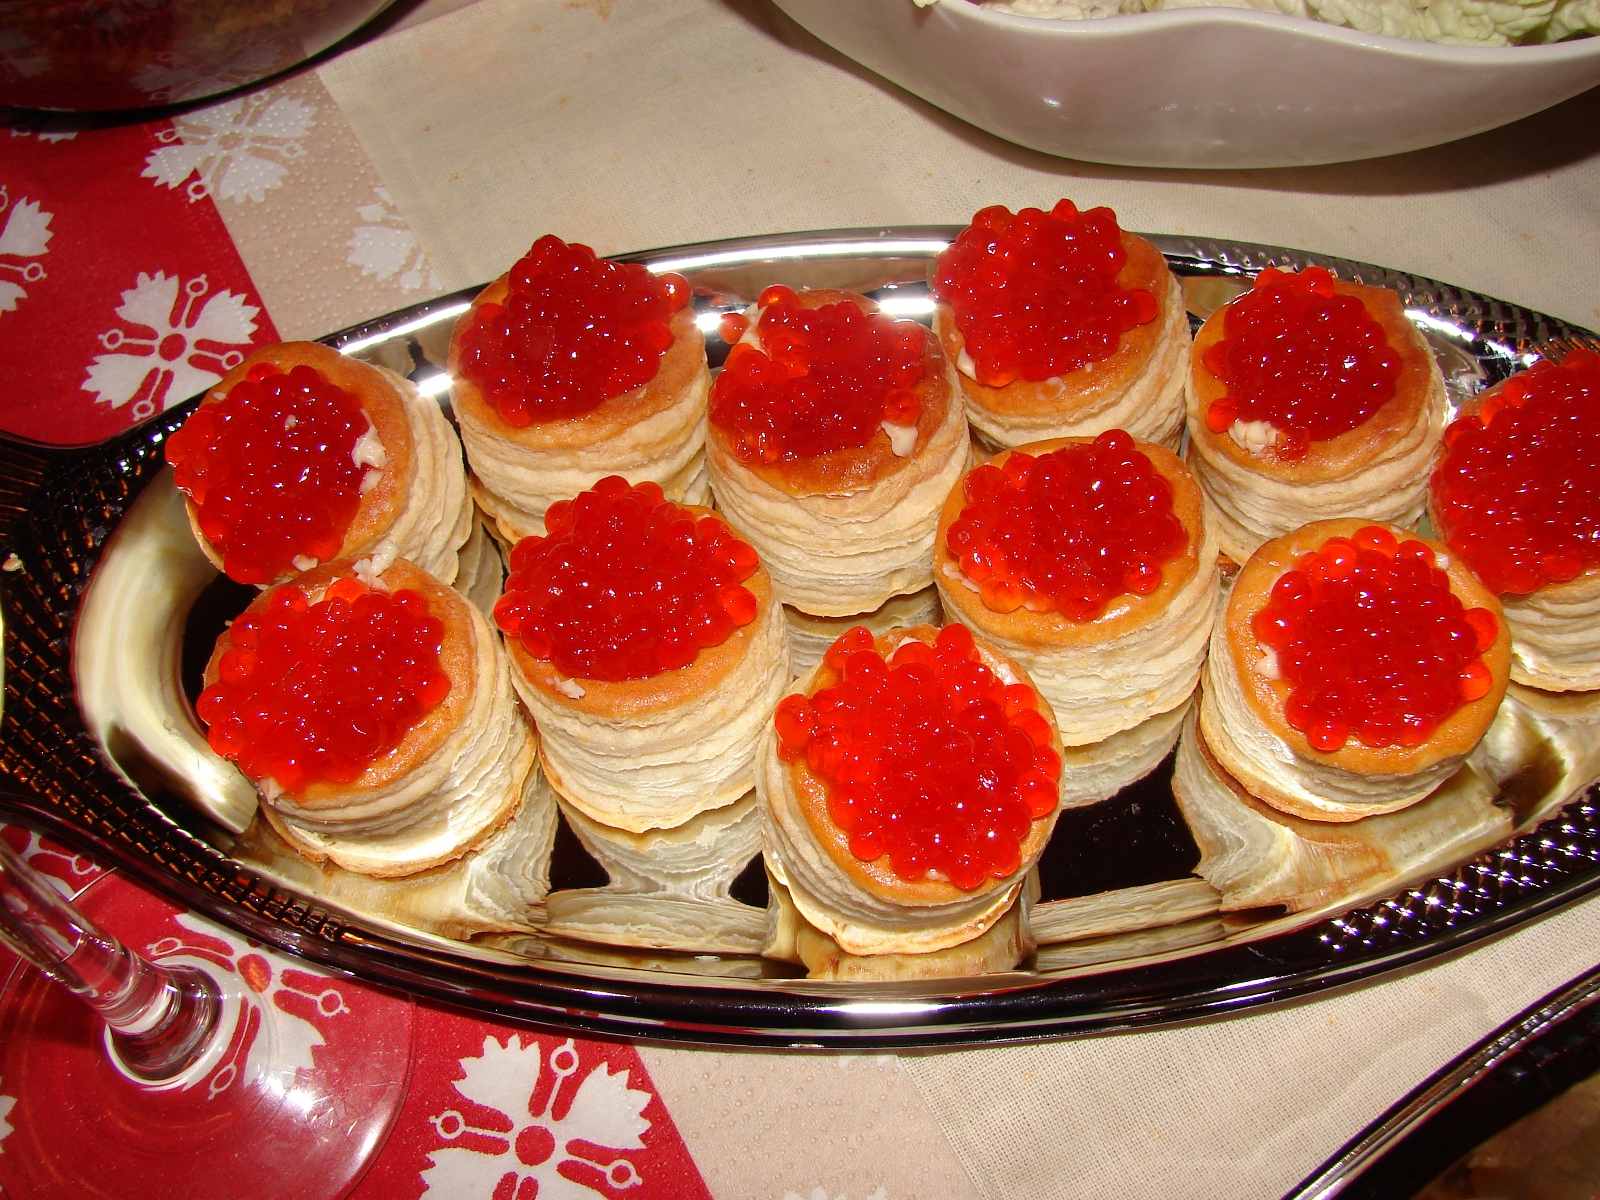 бутерброды с красной икрой, поднос, хорошее качество фото, sandwiches with red caviar, tray, good quality photos